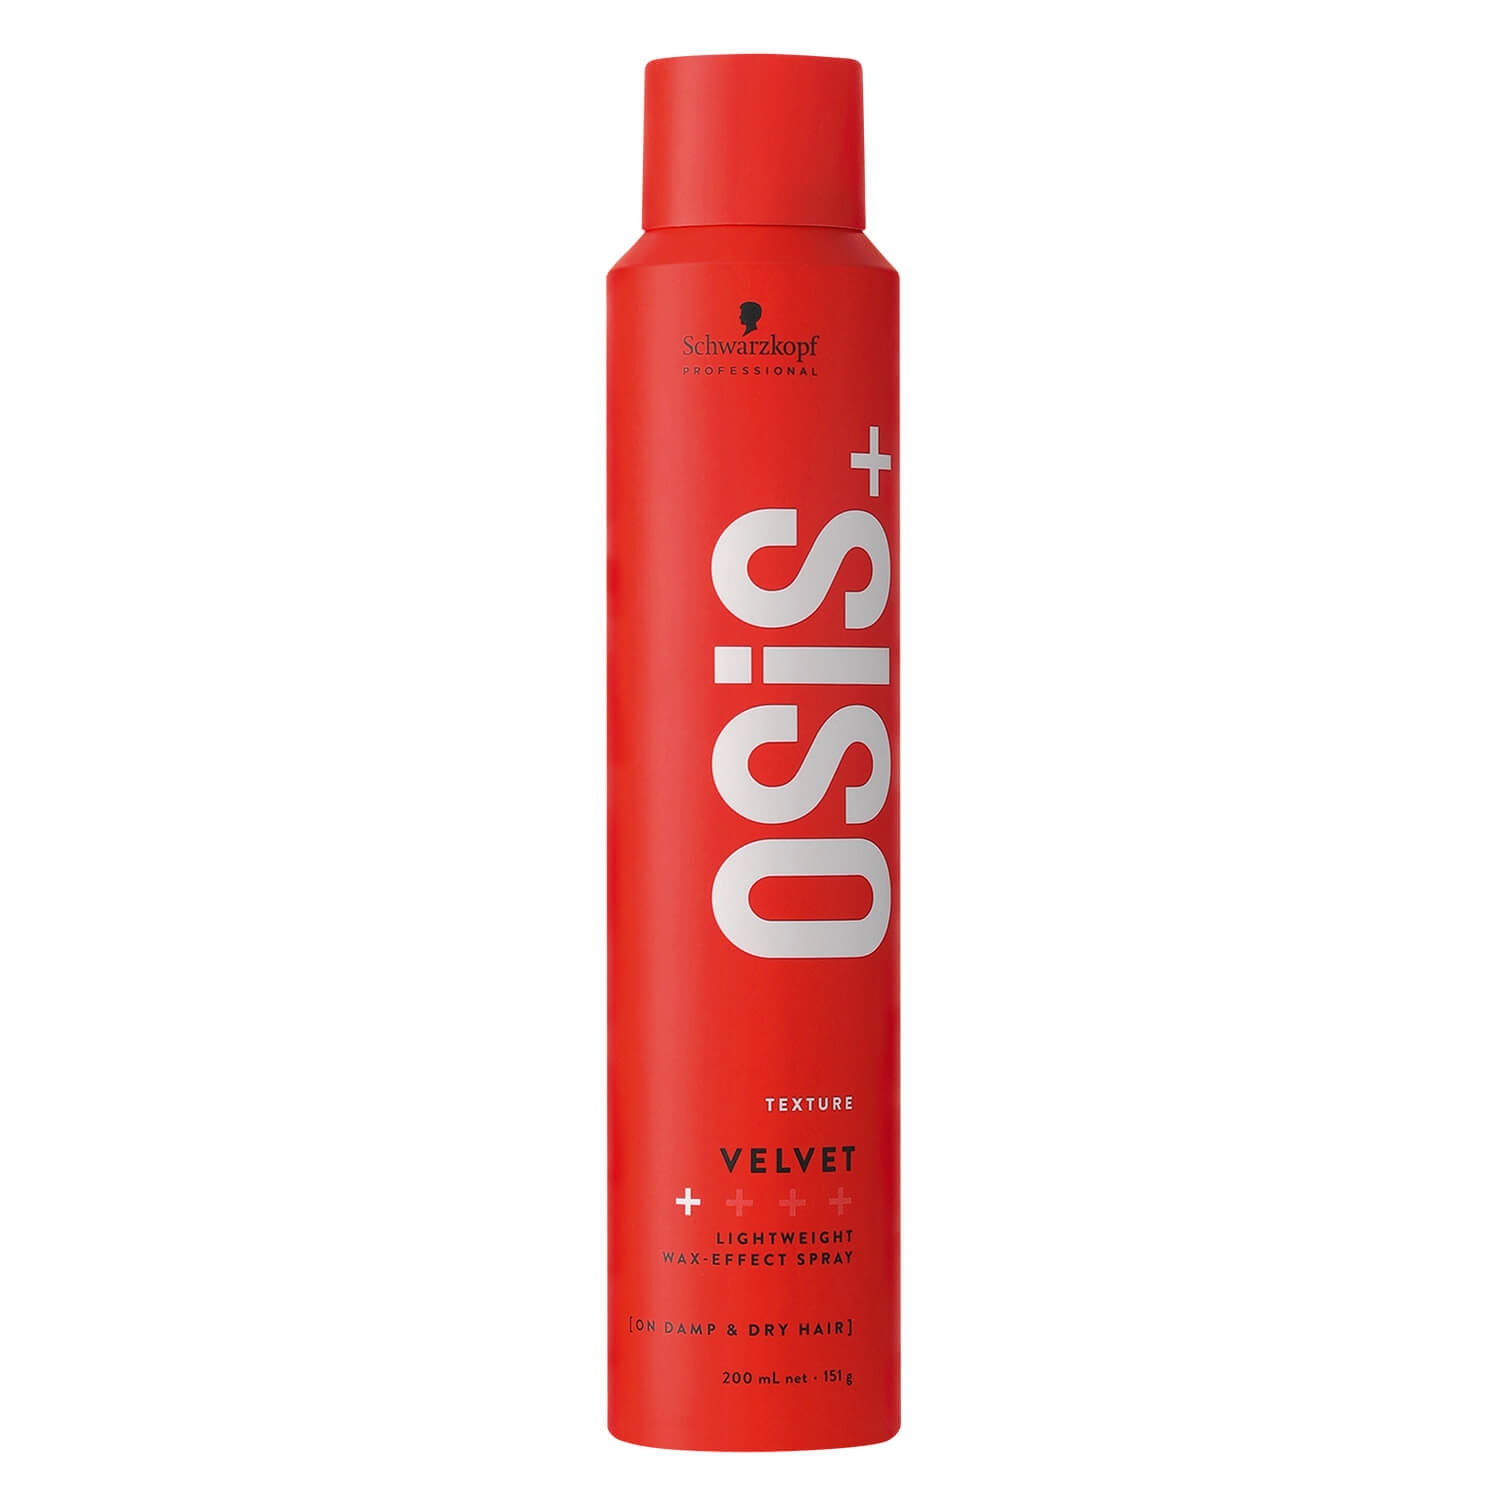 Produktbild von Osis - Velvet Wax-Effect Spray